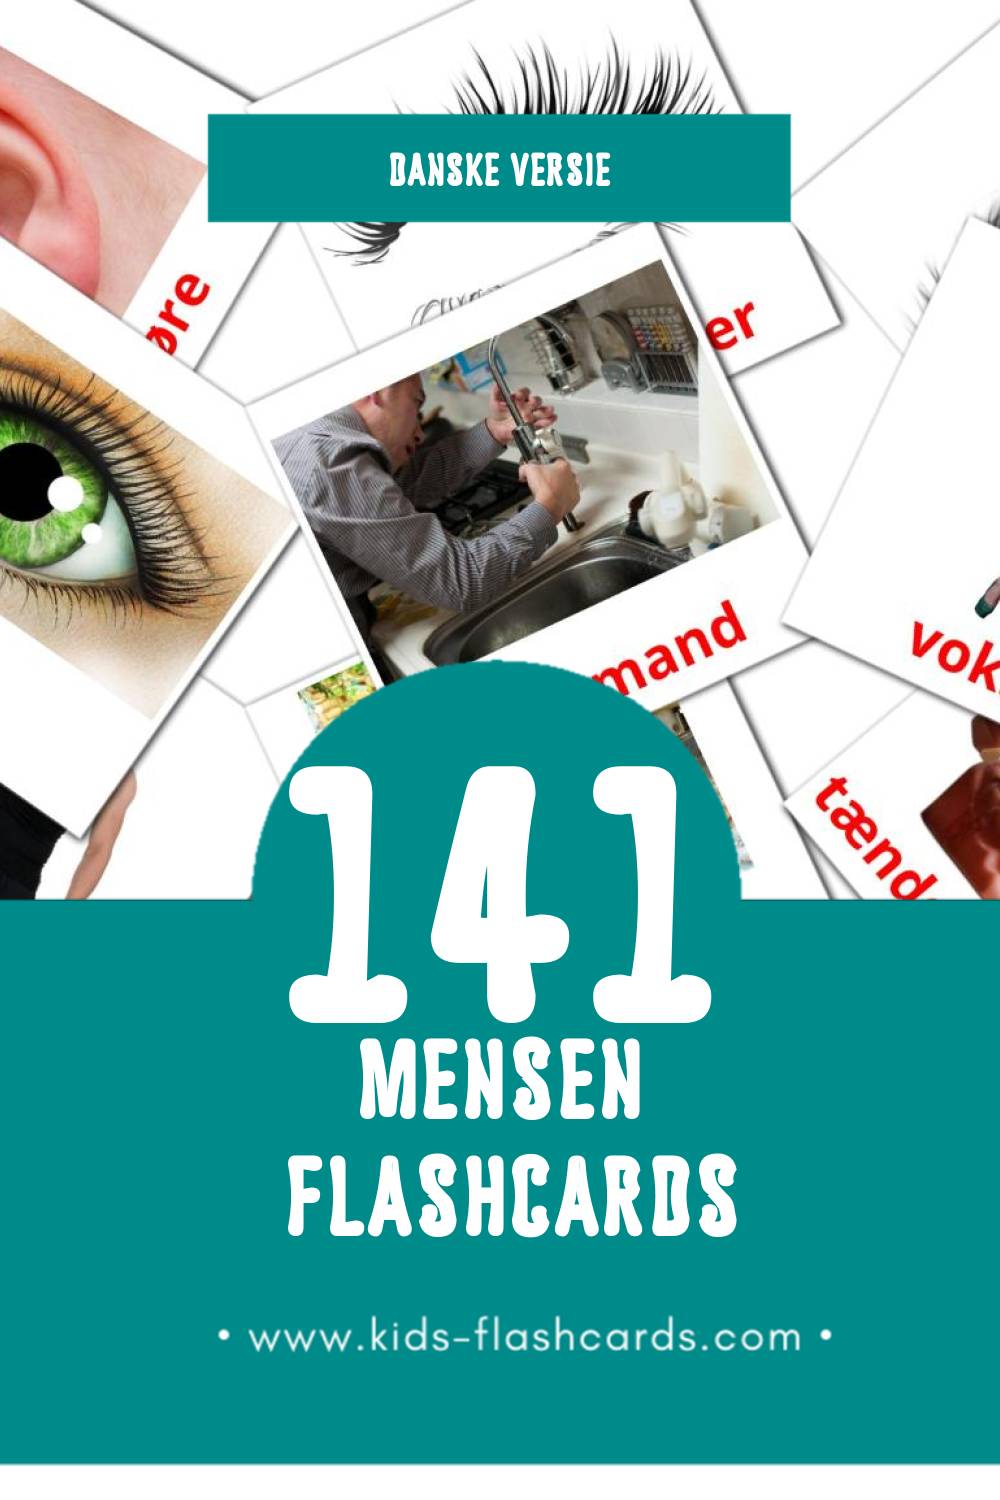 Visuele Mennesker Flashcards voor Kleuters (141 kaarten in het Dansk)